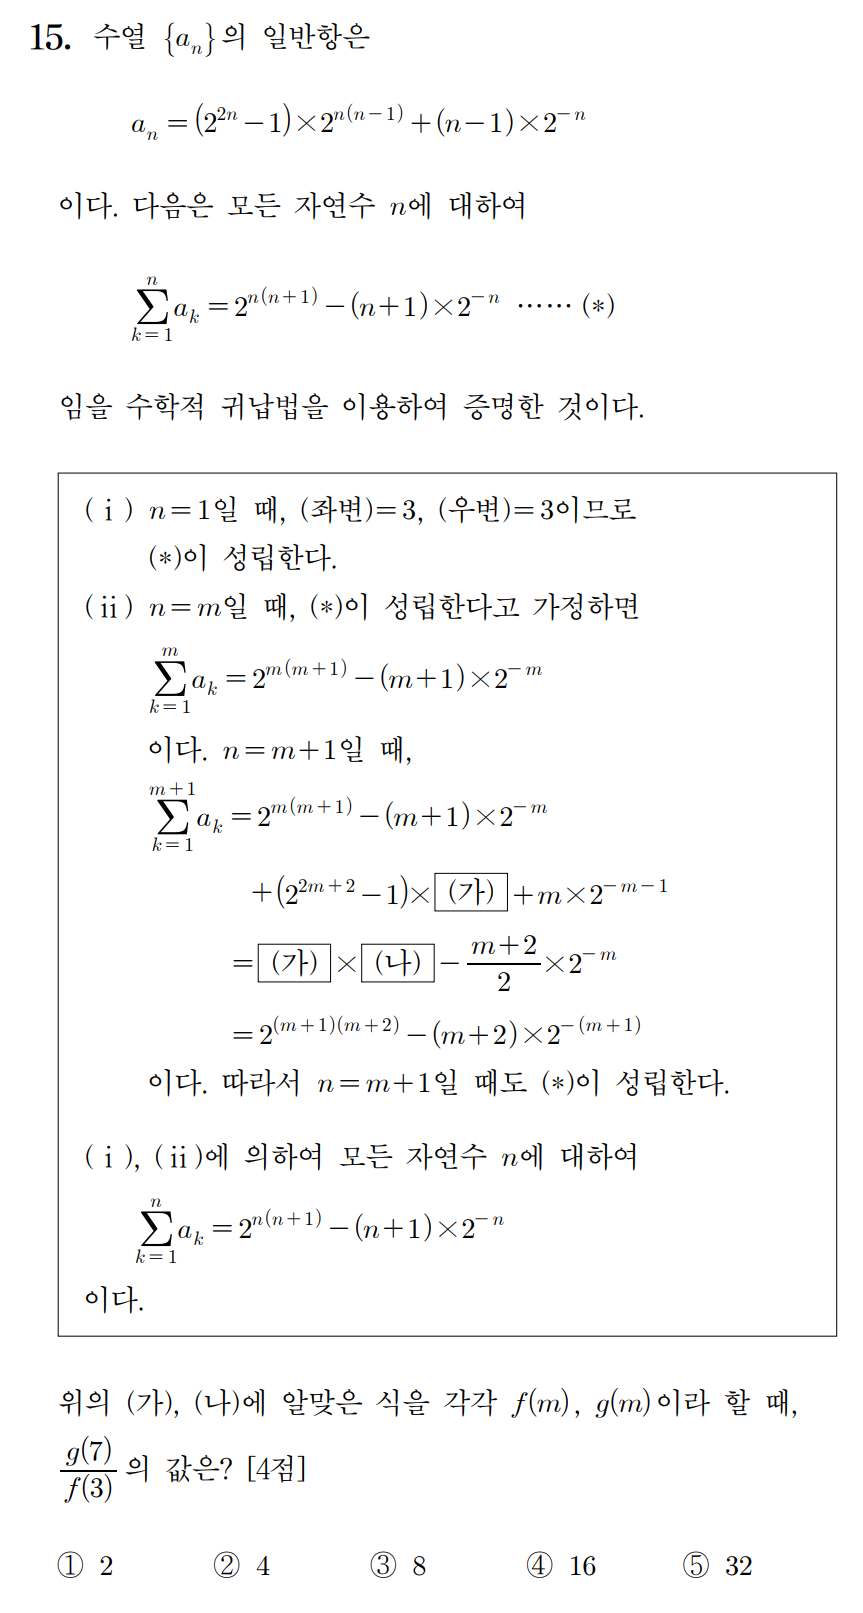 
		                            		
		                            			20-06 평가원 수학 가형 - 15번  문제 
		                            		
		                            		
						                       	
						                       		#수학적 귀납법의 뜻 
						                       	
						                       		#수학적 귀납법 증명 - 방정식 
						                       	
					                       	
					                       	
		                            	